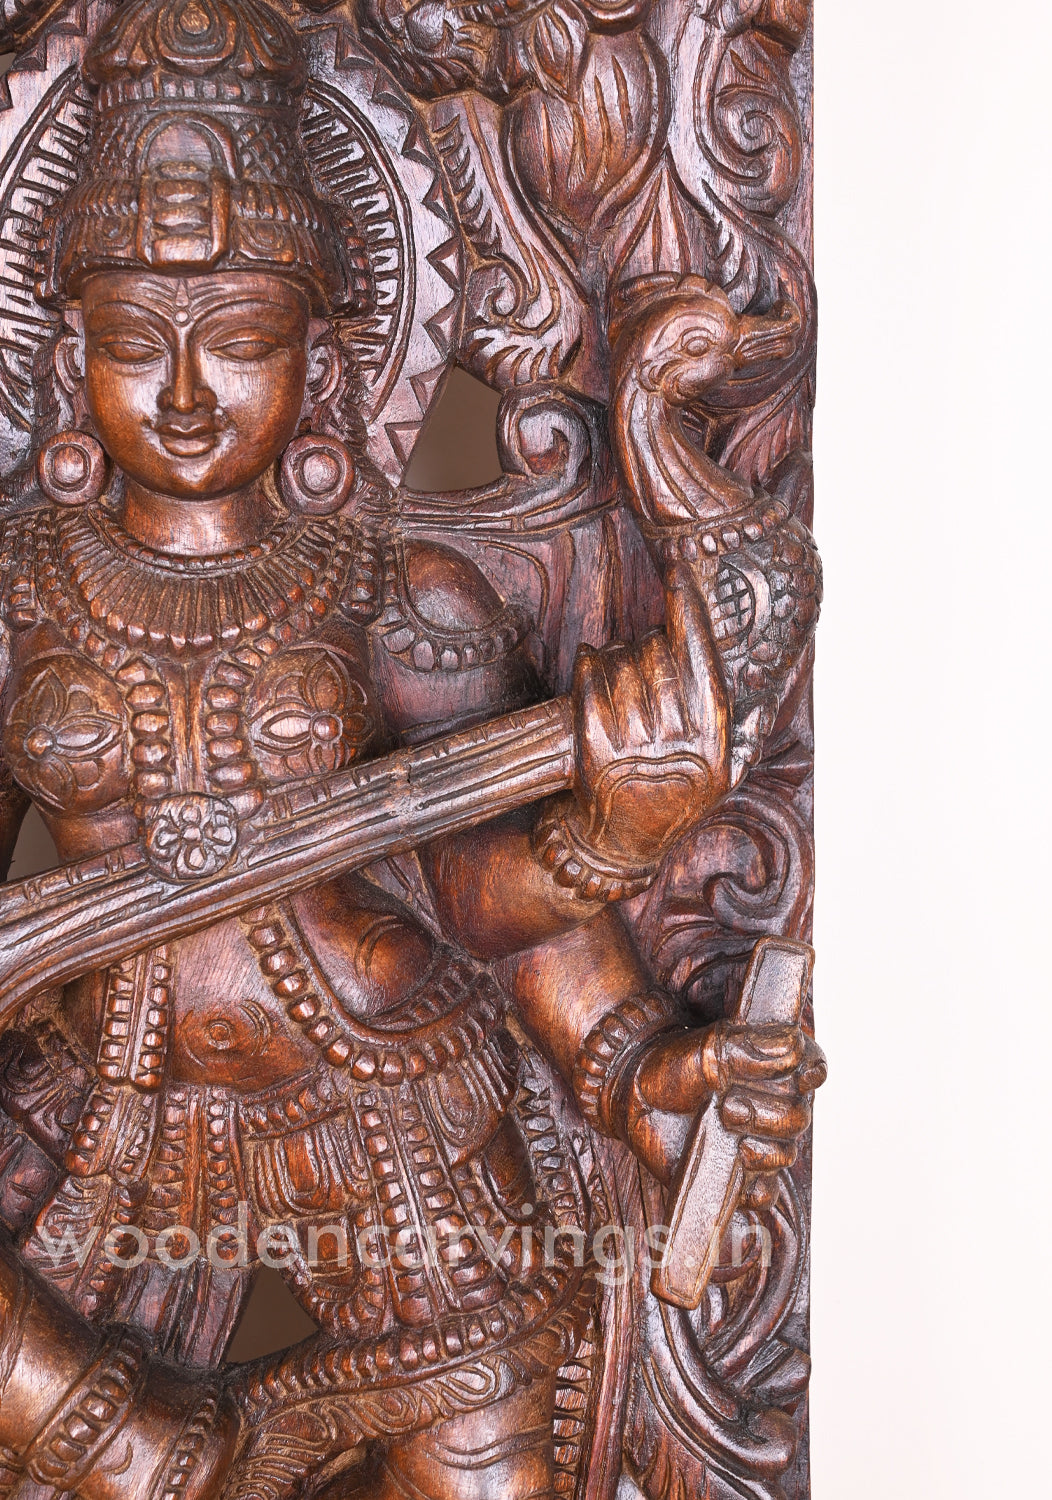 Mesmerizing Abhinaya Saraswathi Dancing on Lotus and Holding Veena Floral Design Wall Mount 48"